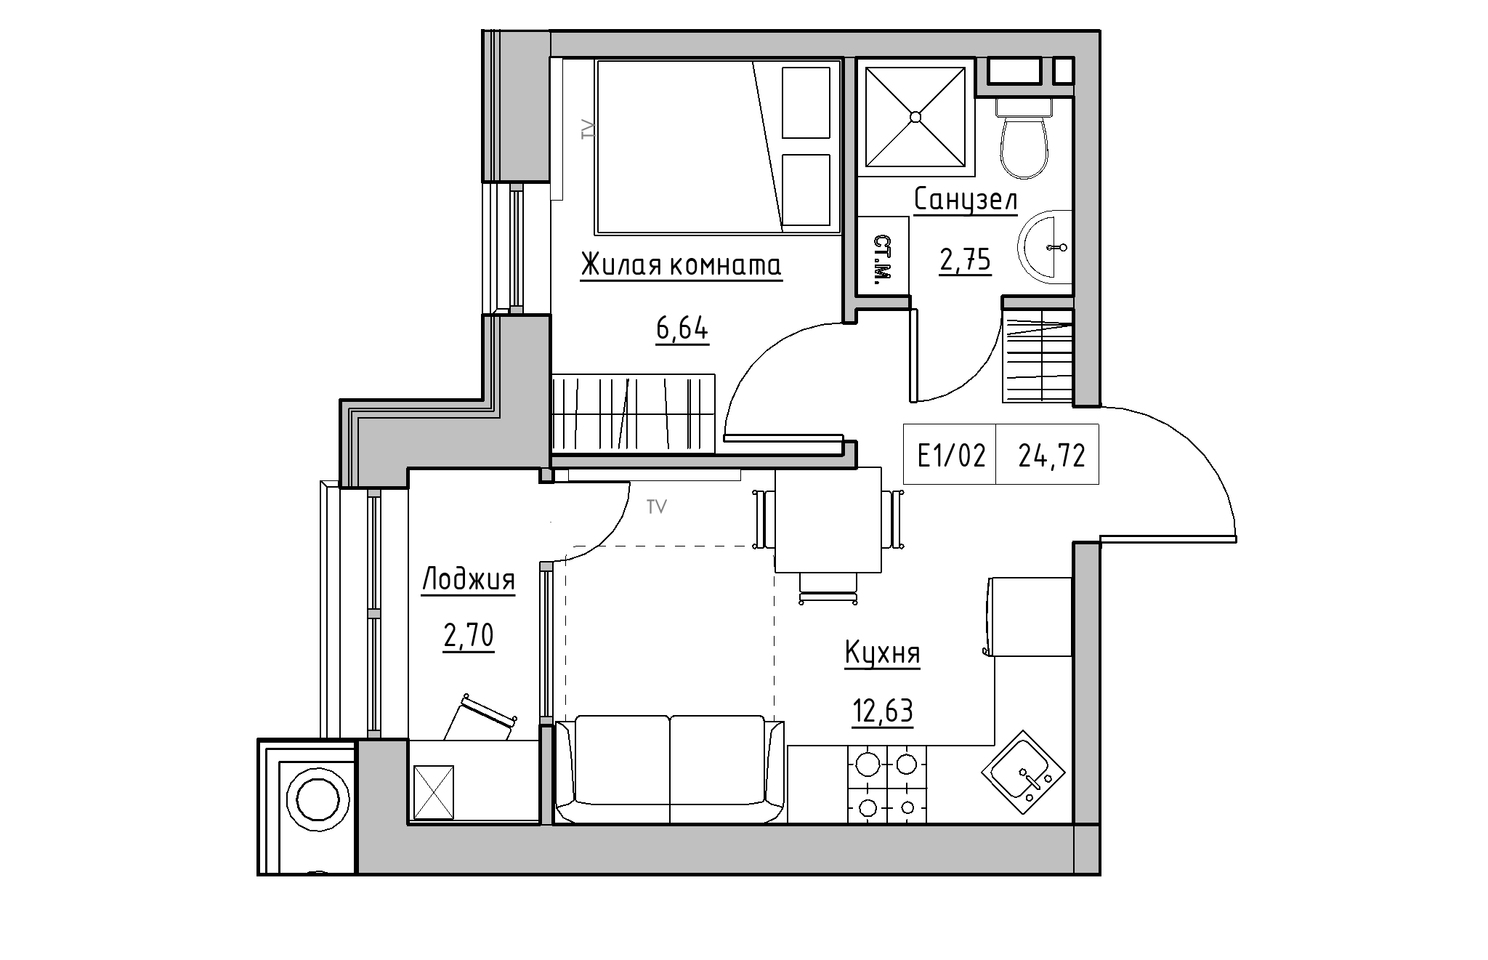 Планировка 1-к квартира площей 24.72м2, KS-010-05/0016.